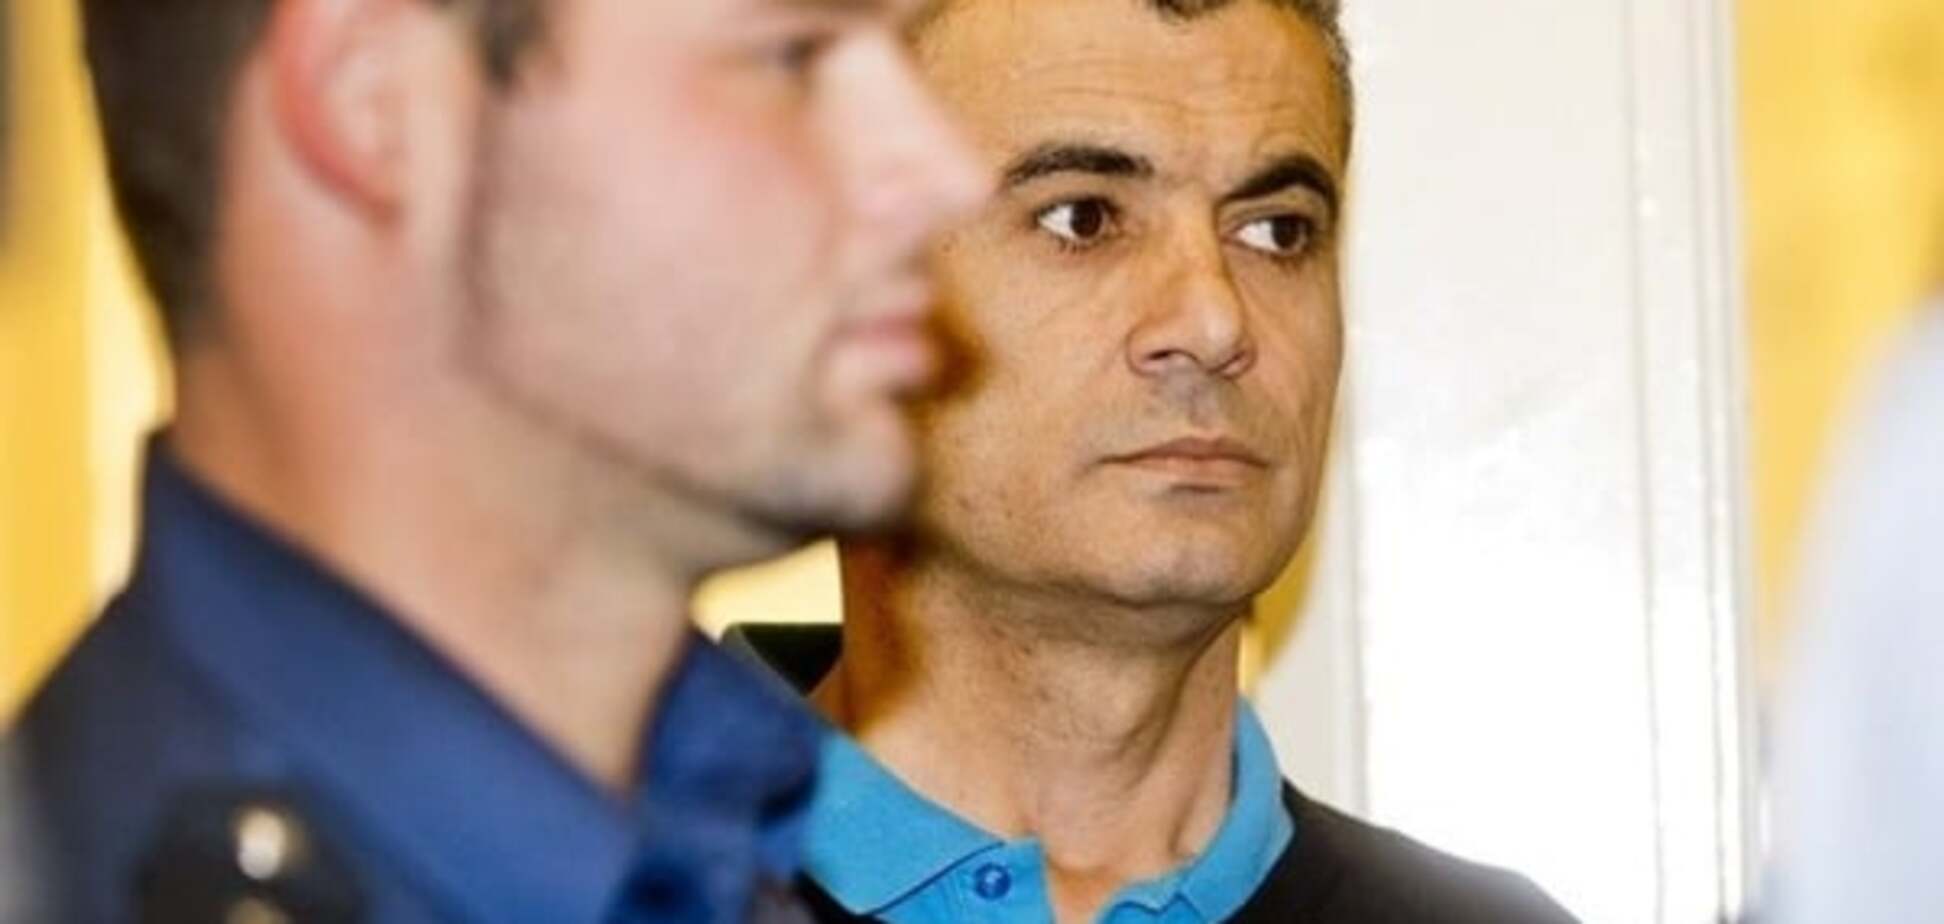 Український дипломат намагався витягнути з в'язниці екс-радника Януковича, який пов'язаний із терористами - ЗМІ